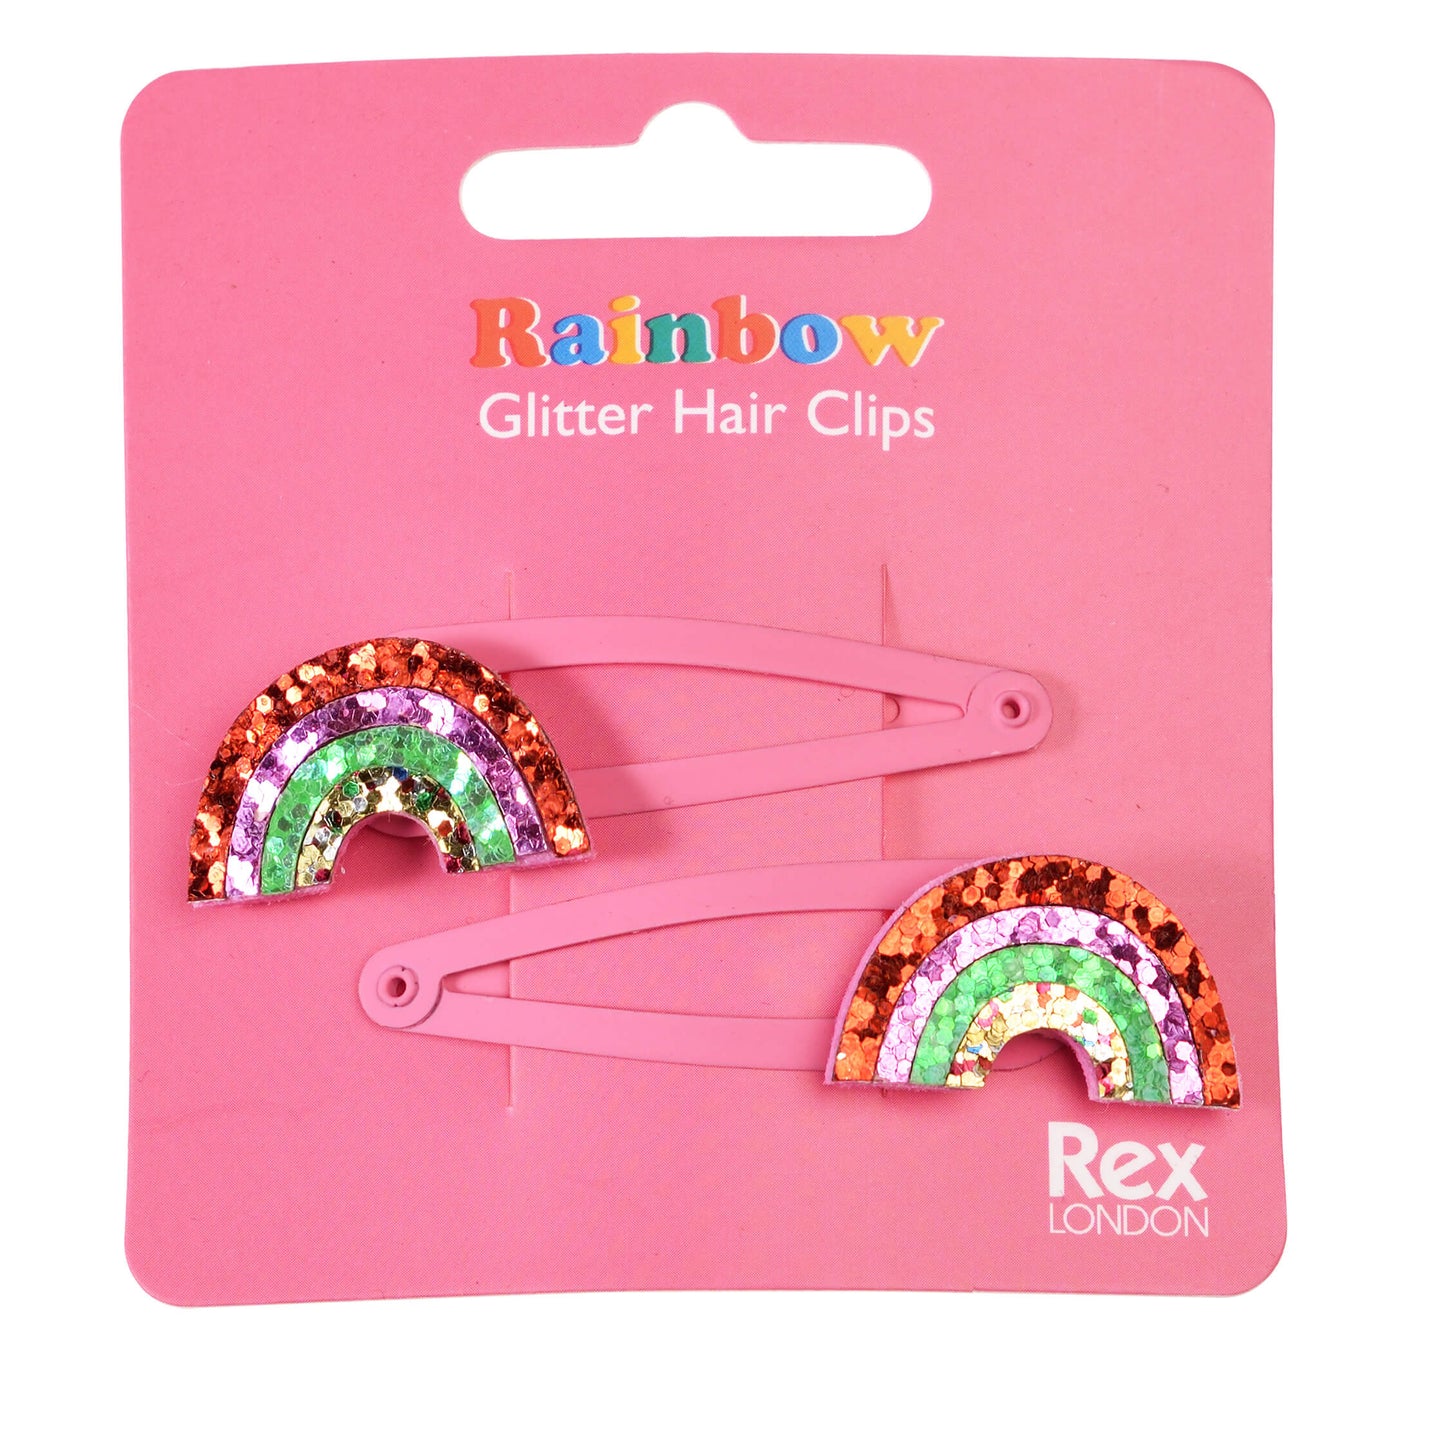 Rainbow Glitter Hair Clips